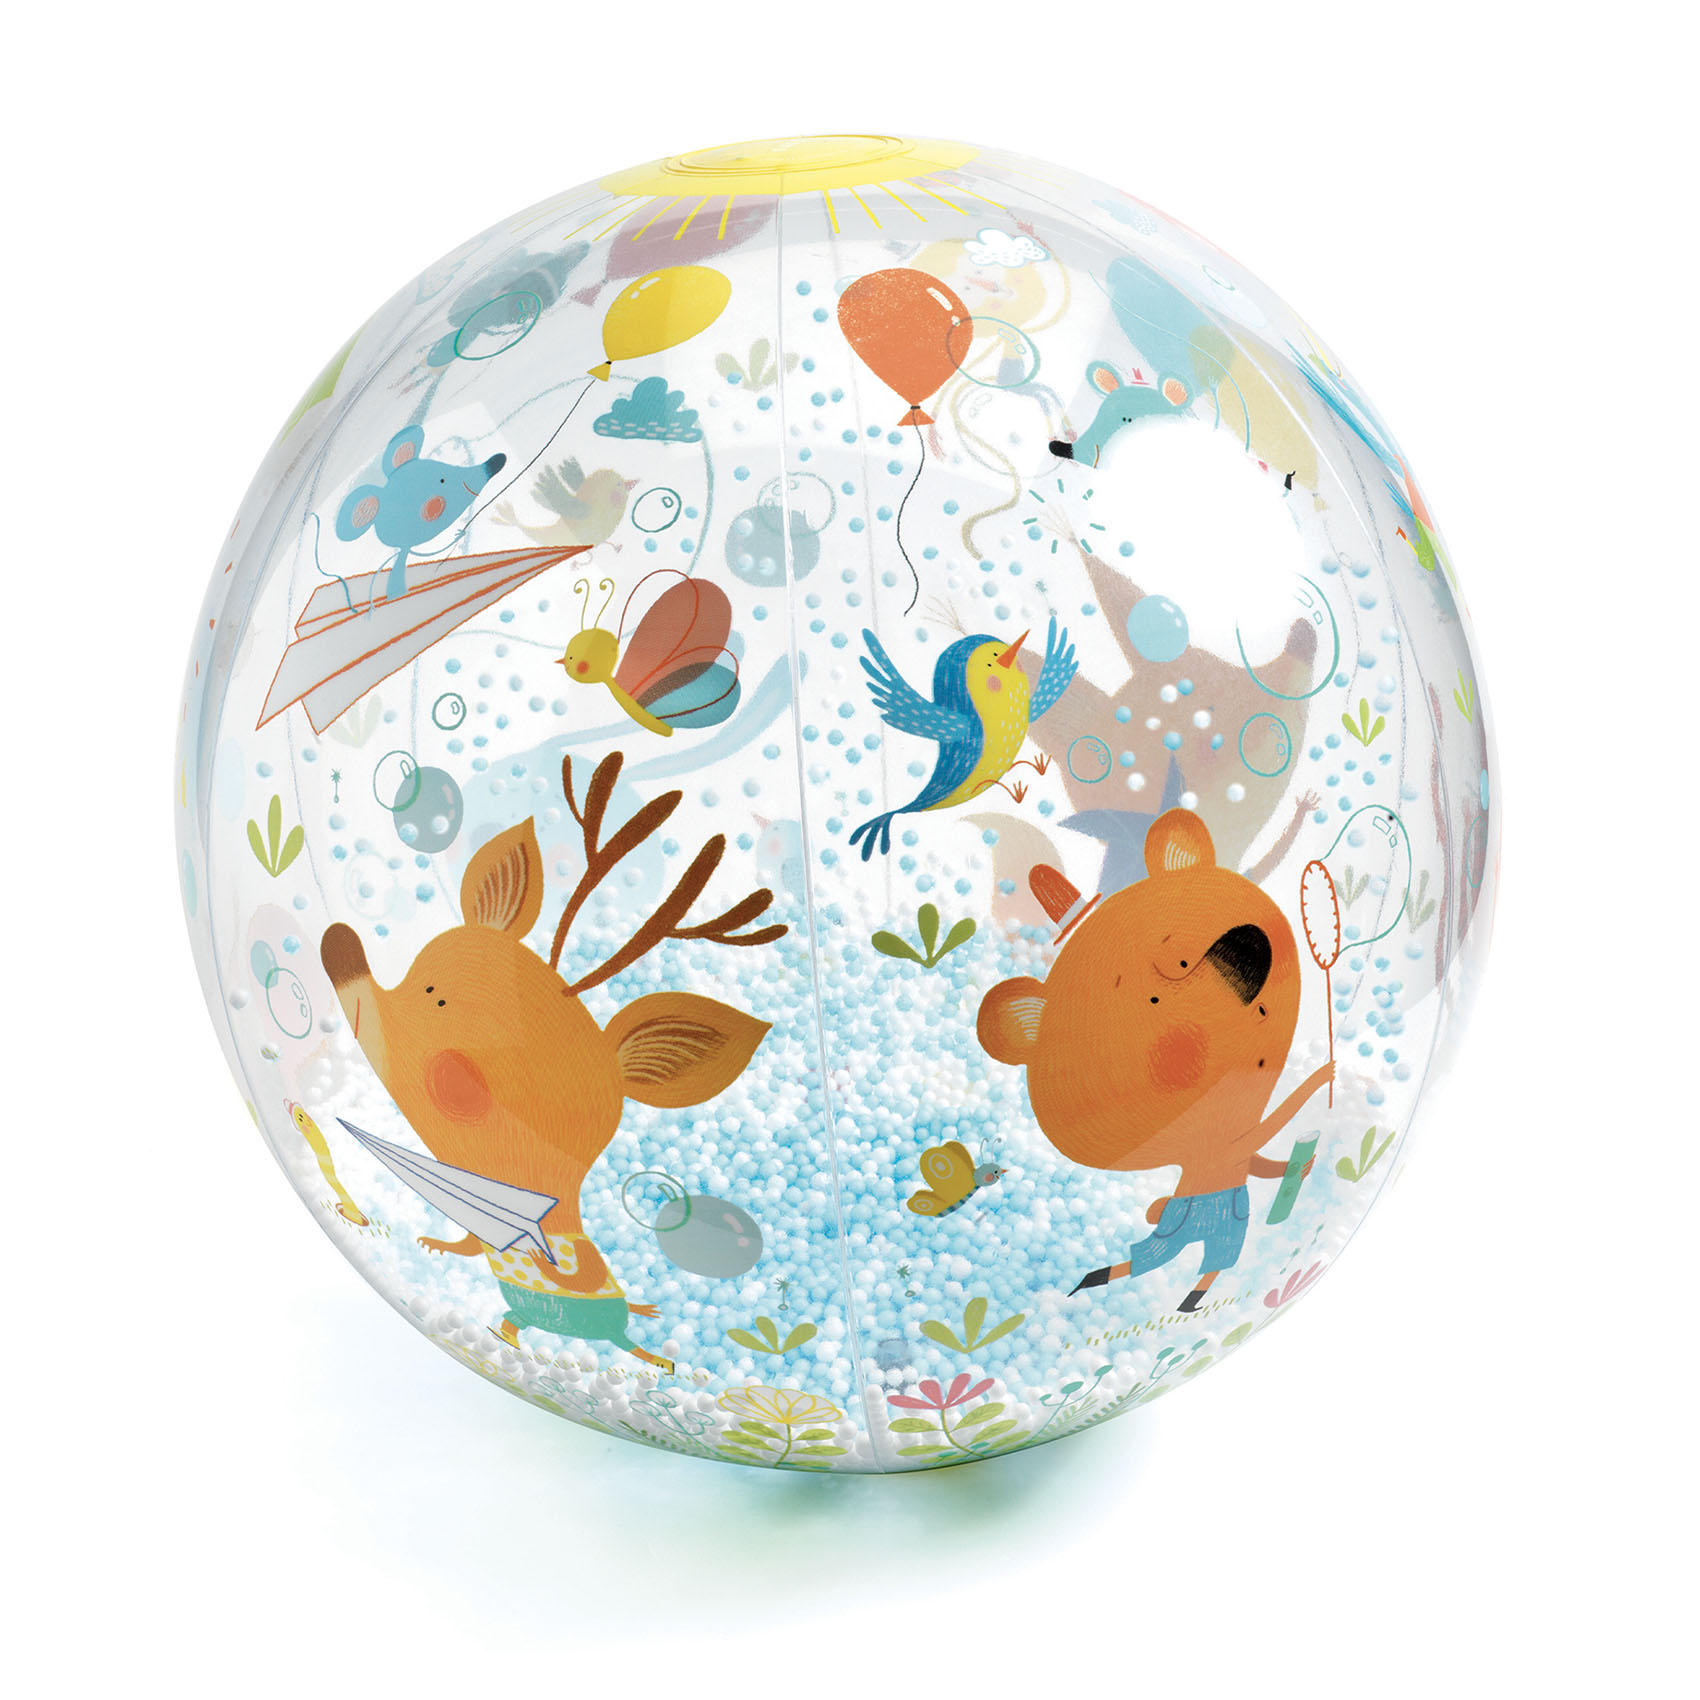 Minge usoara Djeco – Animalute in miscare, Bubbles ball